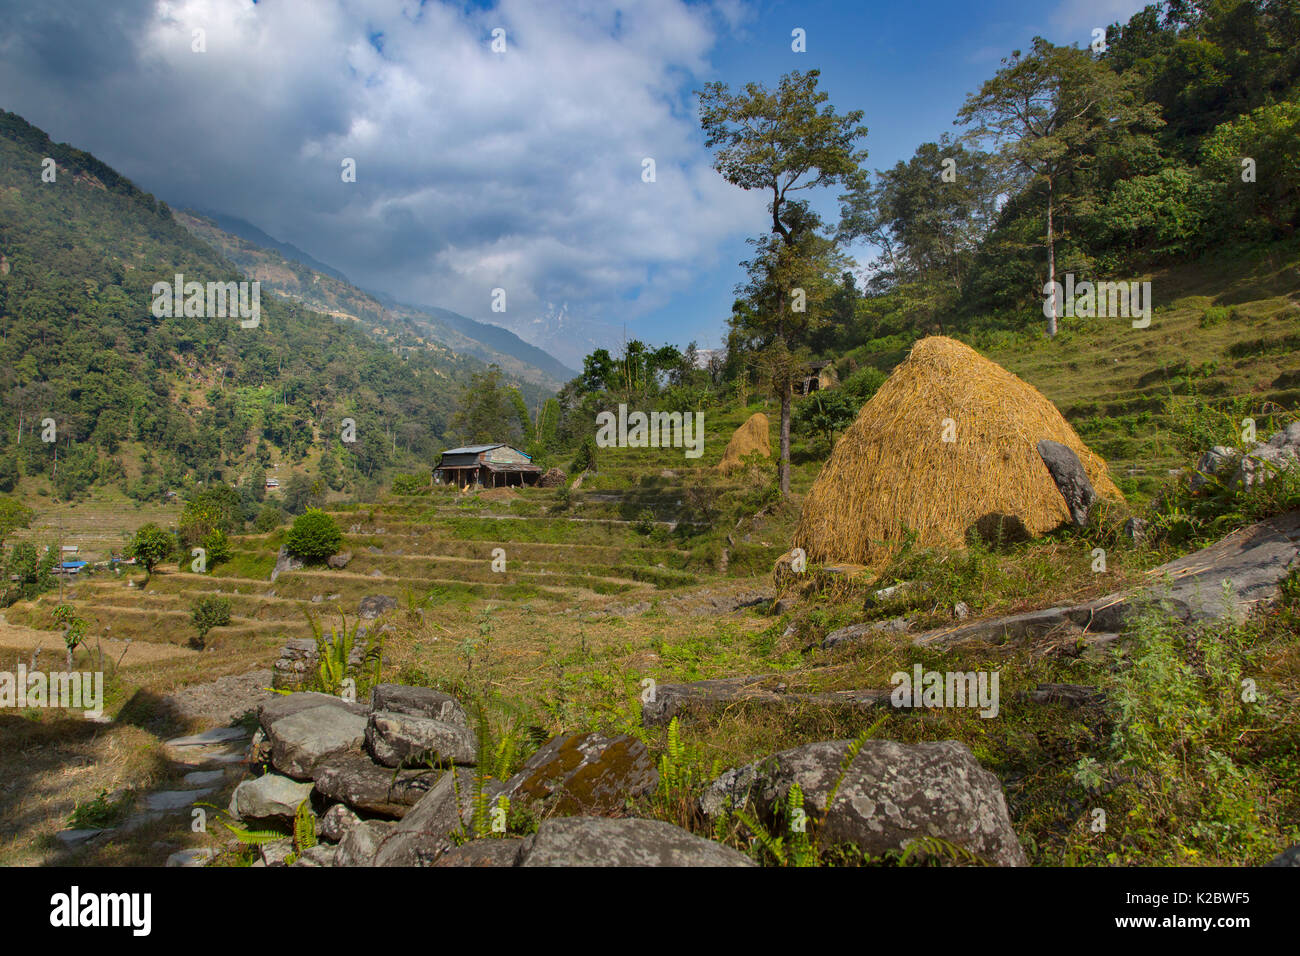 Séchage de la paille sur les terrasses de la colline, près de village de montagne de Ghandruk. Vallée de la modi Khola, Himalaya, Népal. Novembre 2014. Banque D'Images